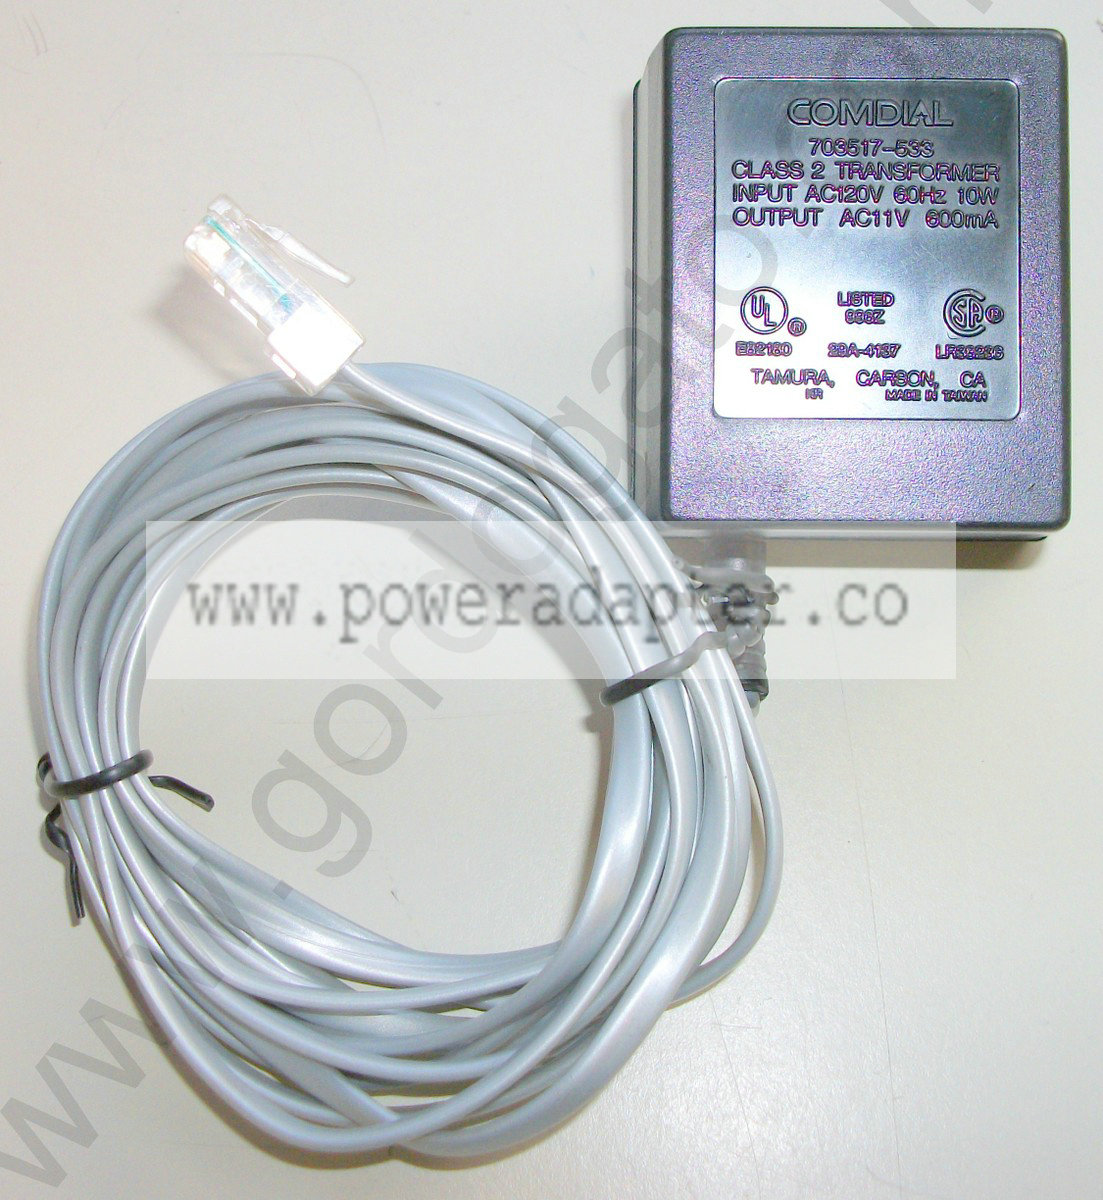 Comdial 703517-533 AC Adapter Transformer 11VAC, 600mA [703517-533] Input: 120VAC 60Hz 10W, Output: 11VAC 600mA. For u - Click Image to Close